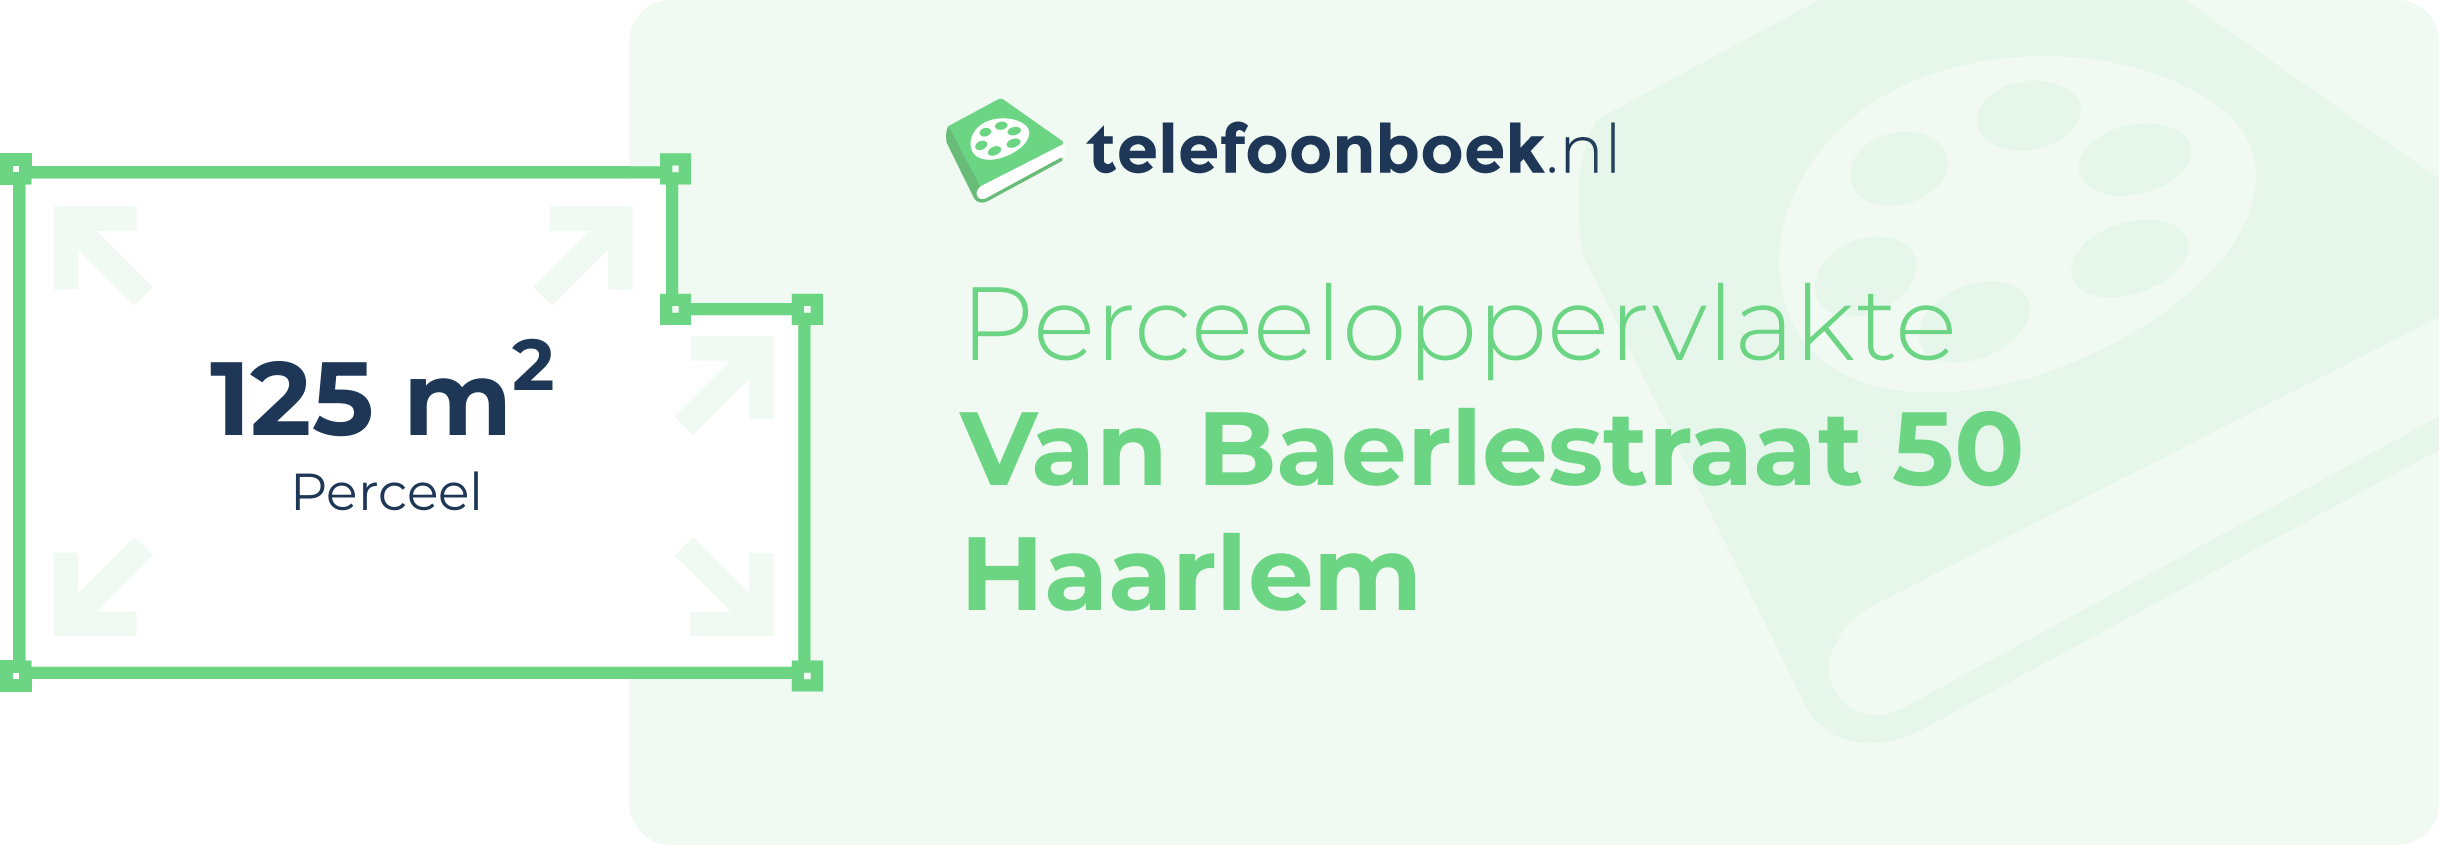 Perceeloppervlakte Van Baerlestraat 50 Haarlem